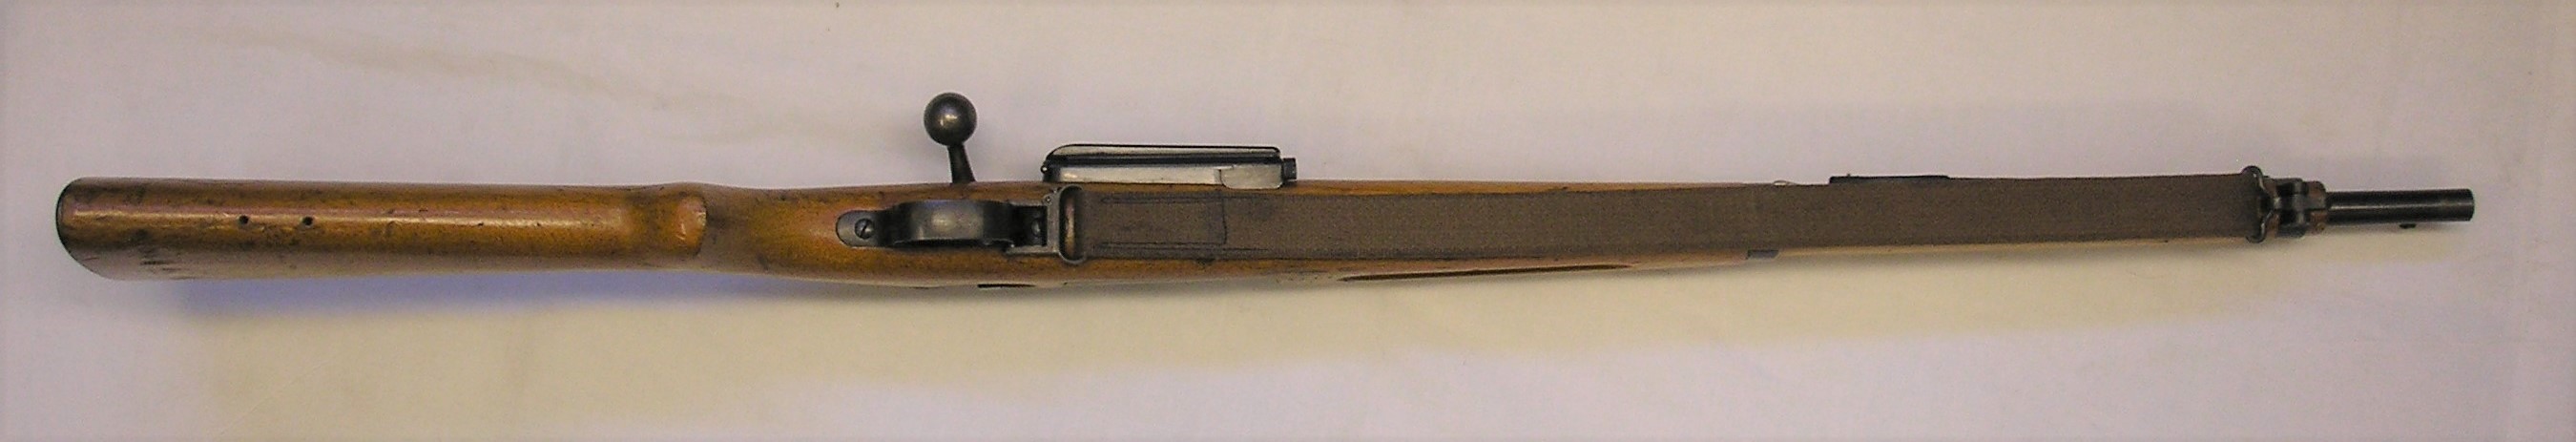 ./guns/rifle/bilder/Rifle-Kongsberg-Krag-M1904-9443-9.JPG